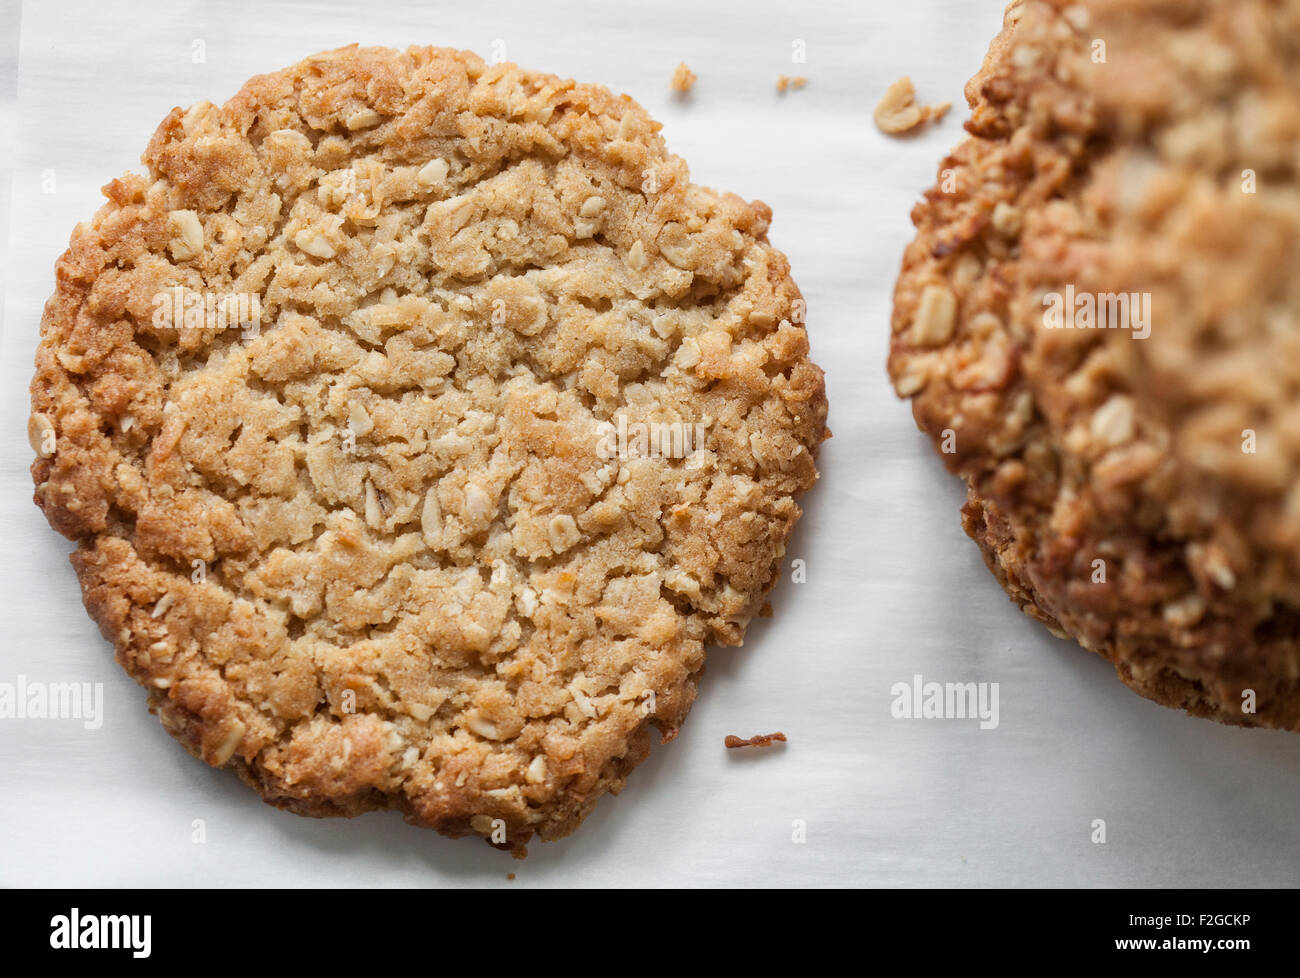 Guardando verso il basso su una anzac cookie con una pila a destra su bianco Foto Stock